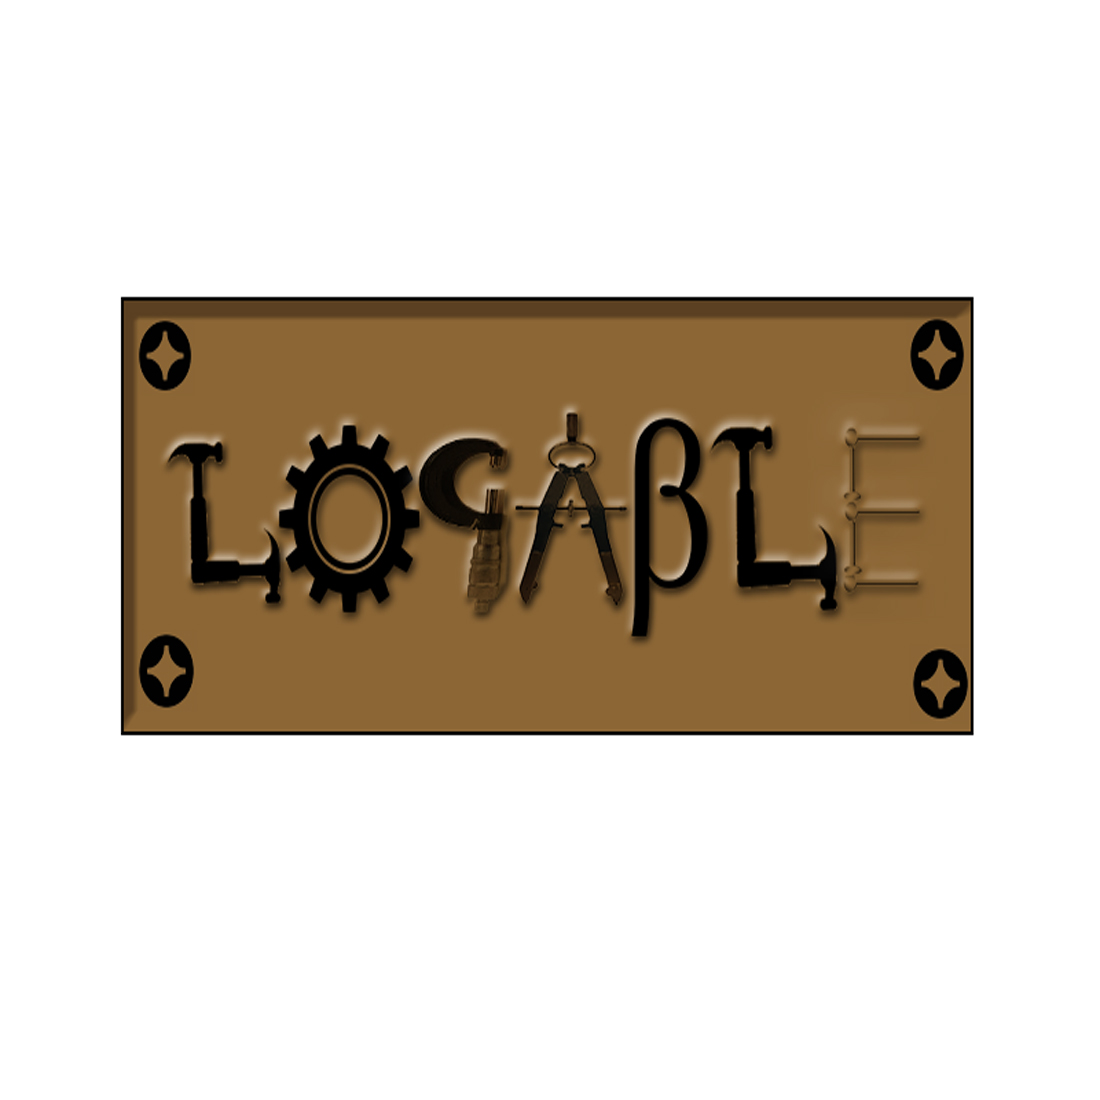 logable logo3 920